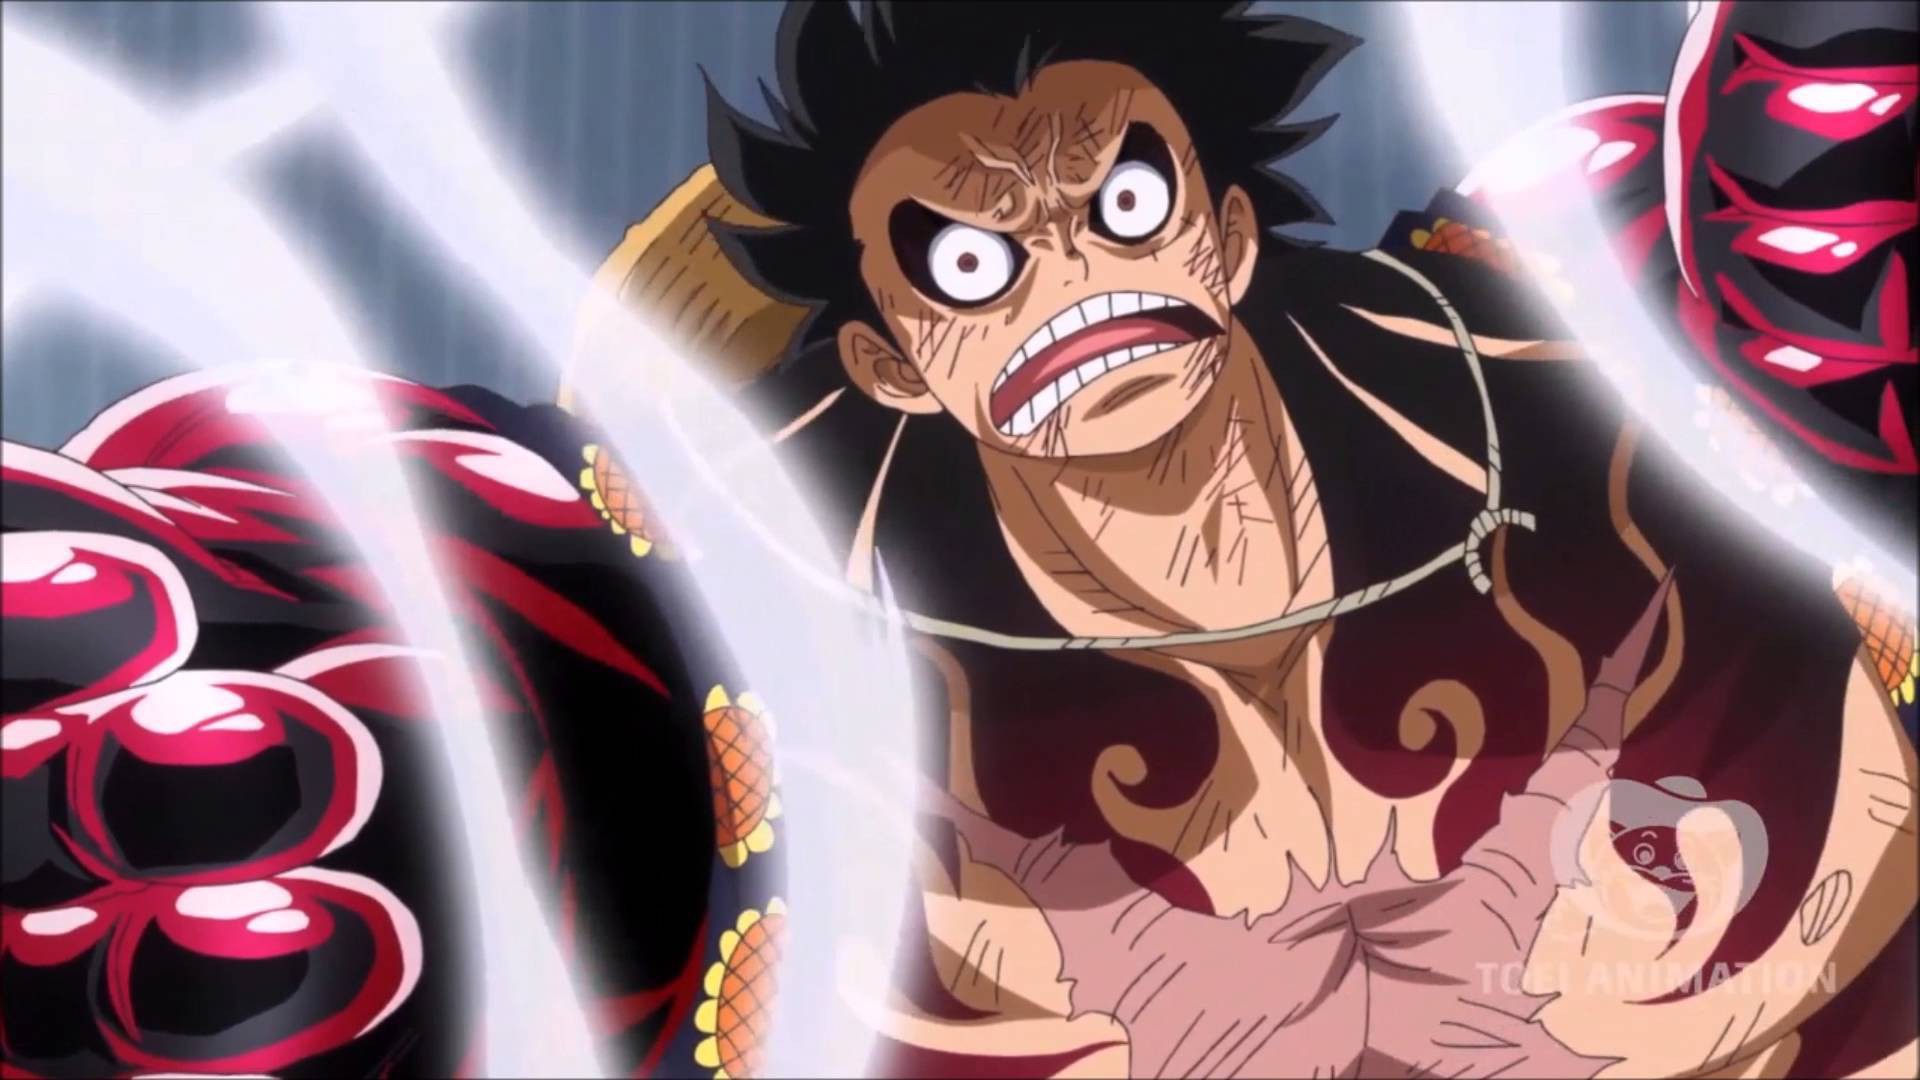 Những tín đồ của One Piece chắc chắn không thể bỏ lỡ Gear 4 - bản nâng cấp đầy uy lực của Luffy. Hình ảnh sẽ mô tả chi tiết các chiêu thức, tạo hình của Gear 4 khiến bạn không thể rời mắt khỏi màn hình.